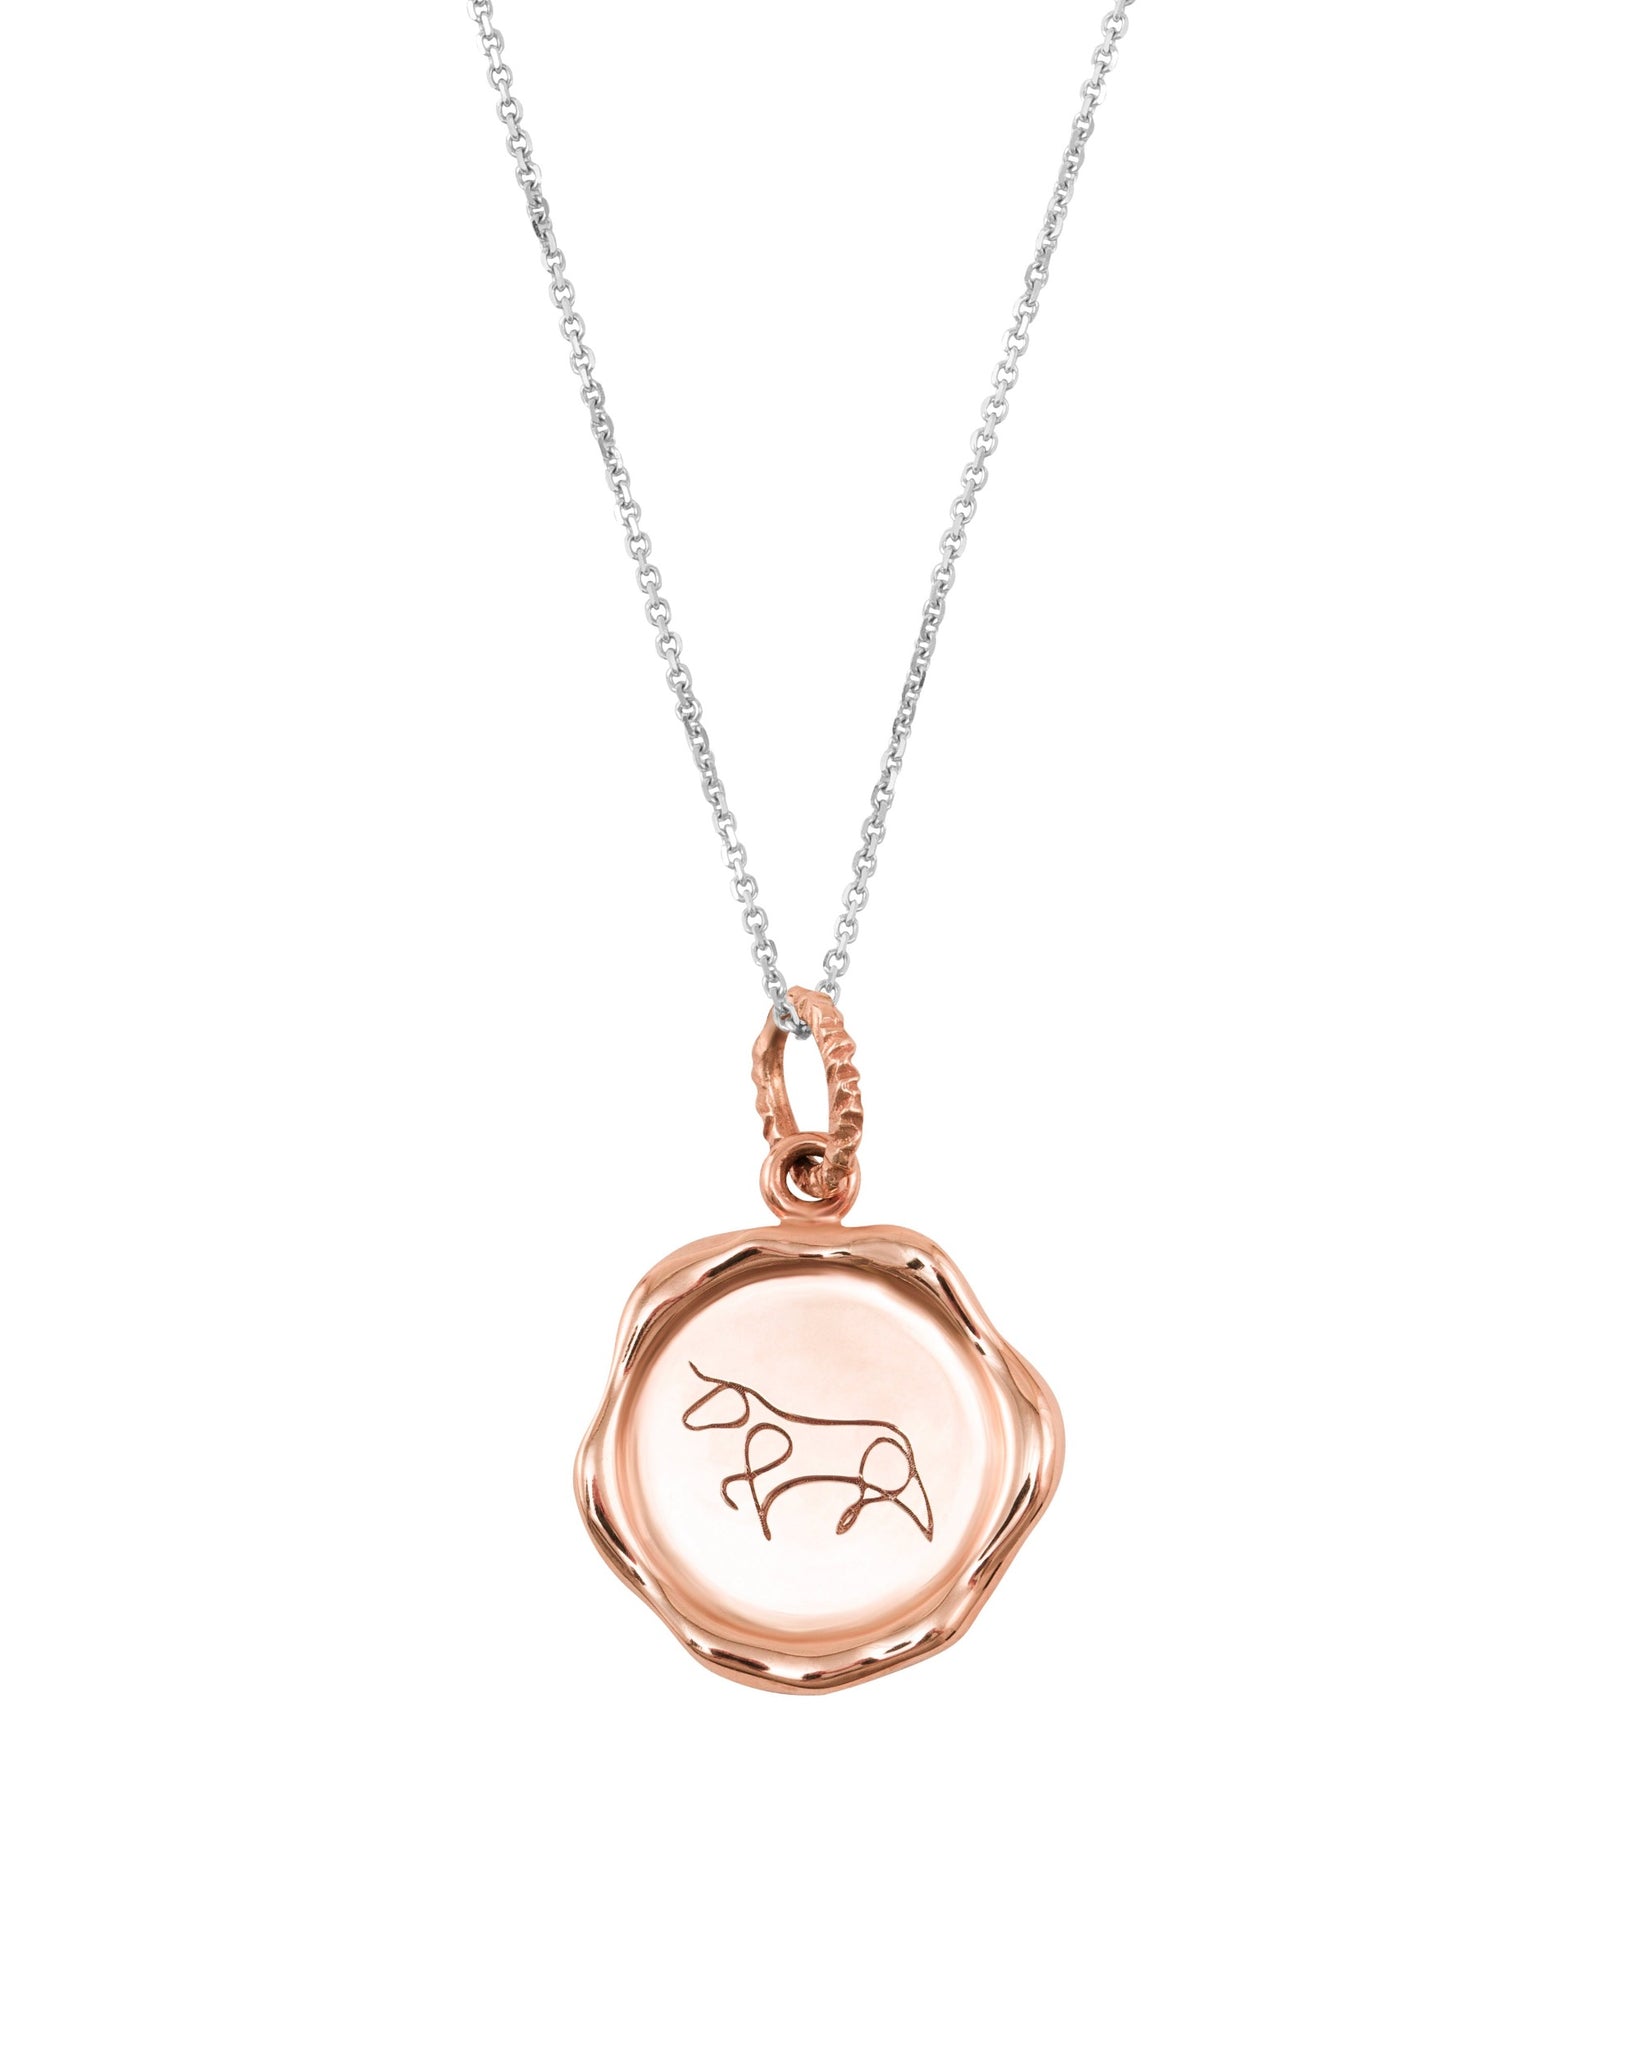 Zodiac Taurus necklace